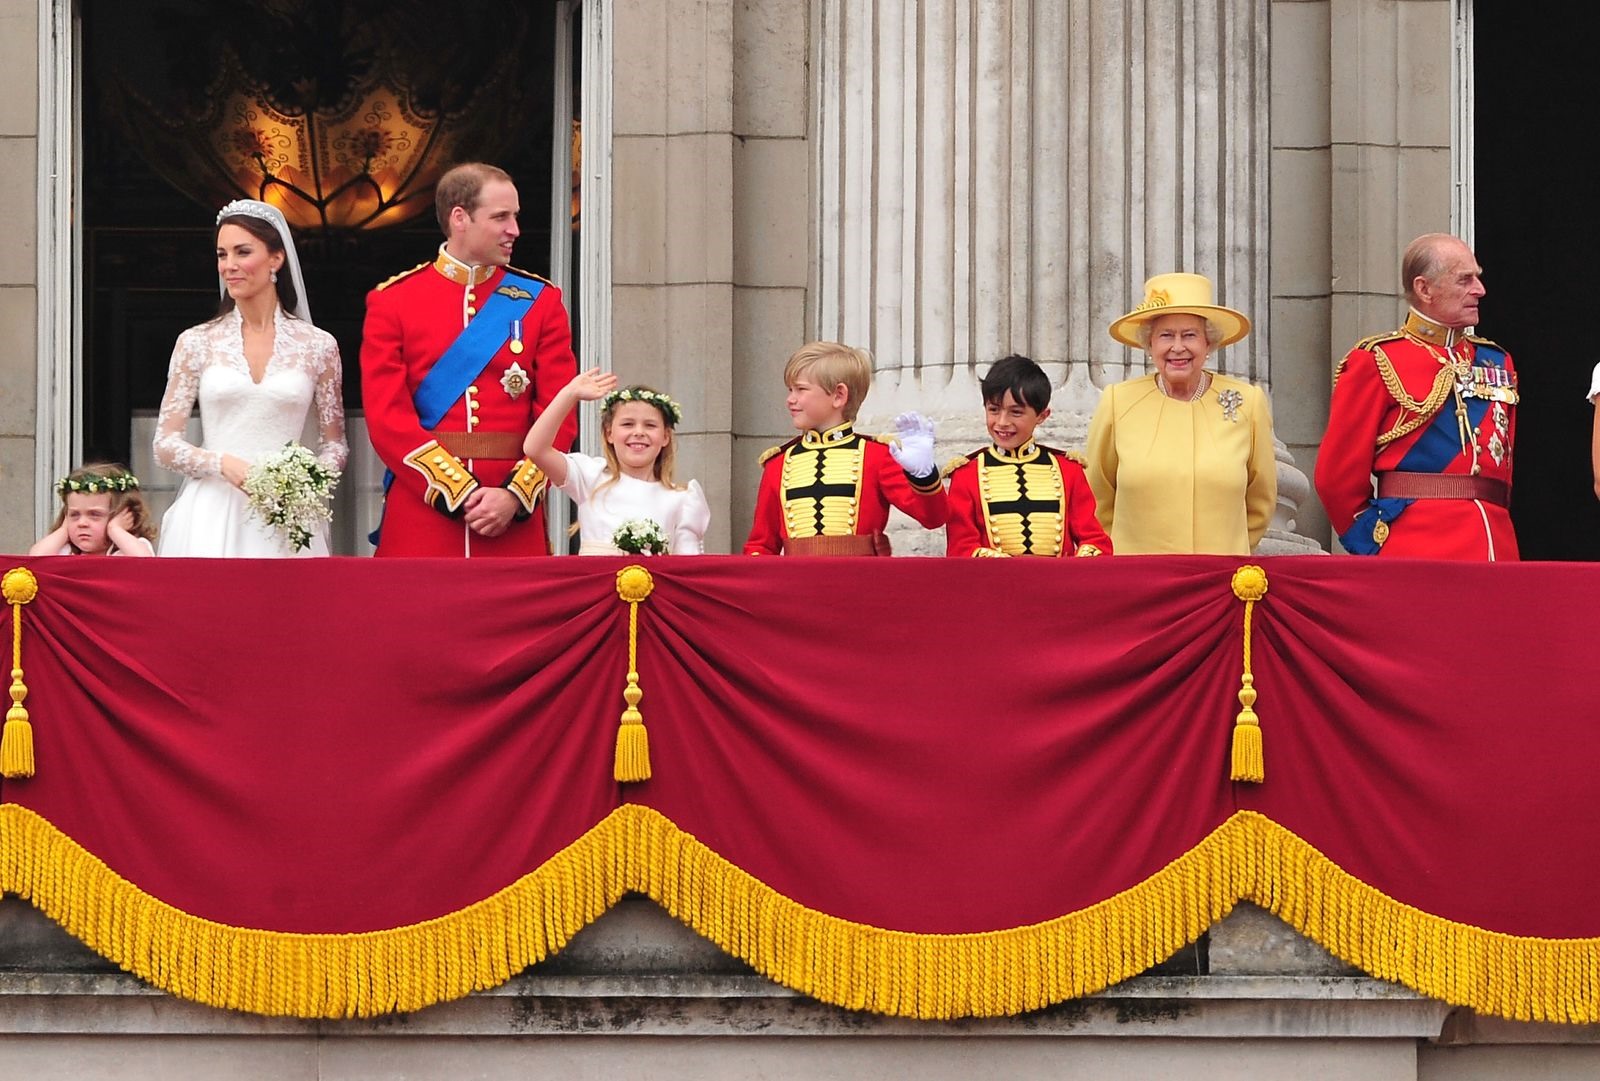 Nữ hoàng chào đón đám đông từ ban công của Cung điện Buckingham vào tháng 4 năm 2011. Cháu trai của bà, Hoàng tử William kết hôn với Catherine Middleton. Ảnh: Getty